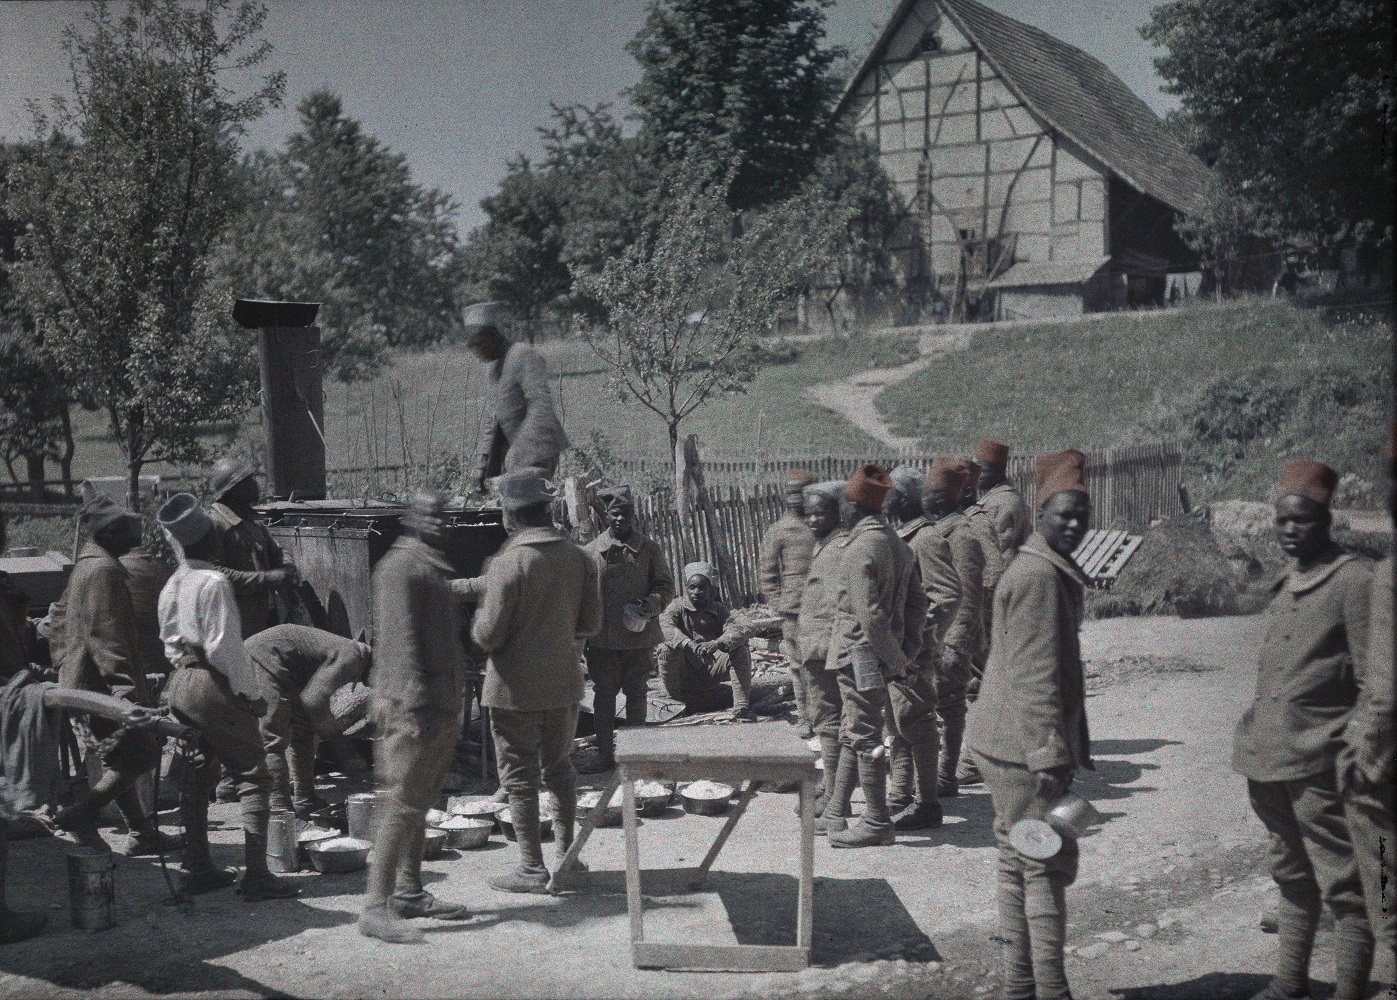 Groupe de militaires sénégalais pendant l'heure de repos à Saint-Ulrich (Haut-Rhin)